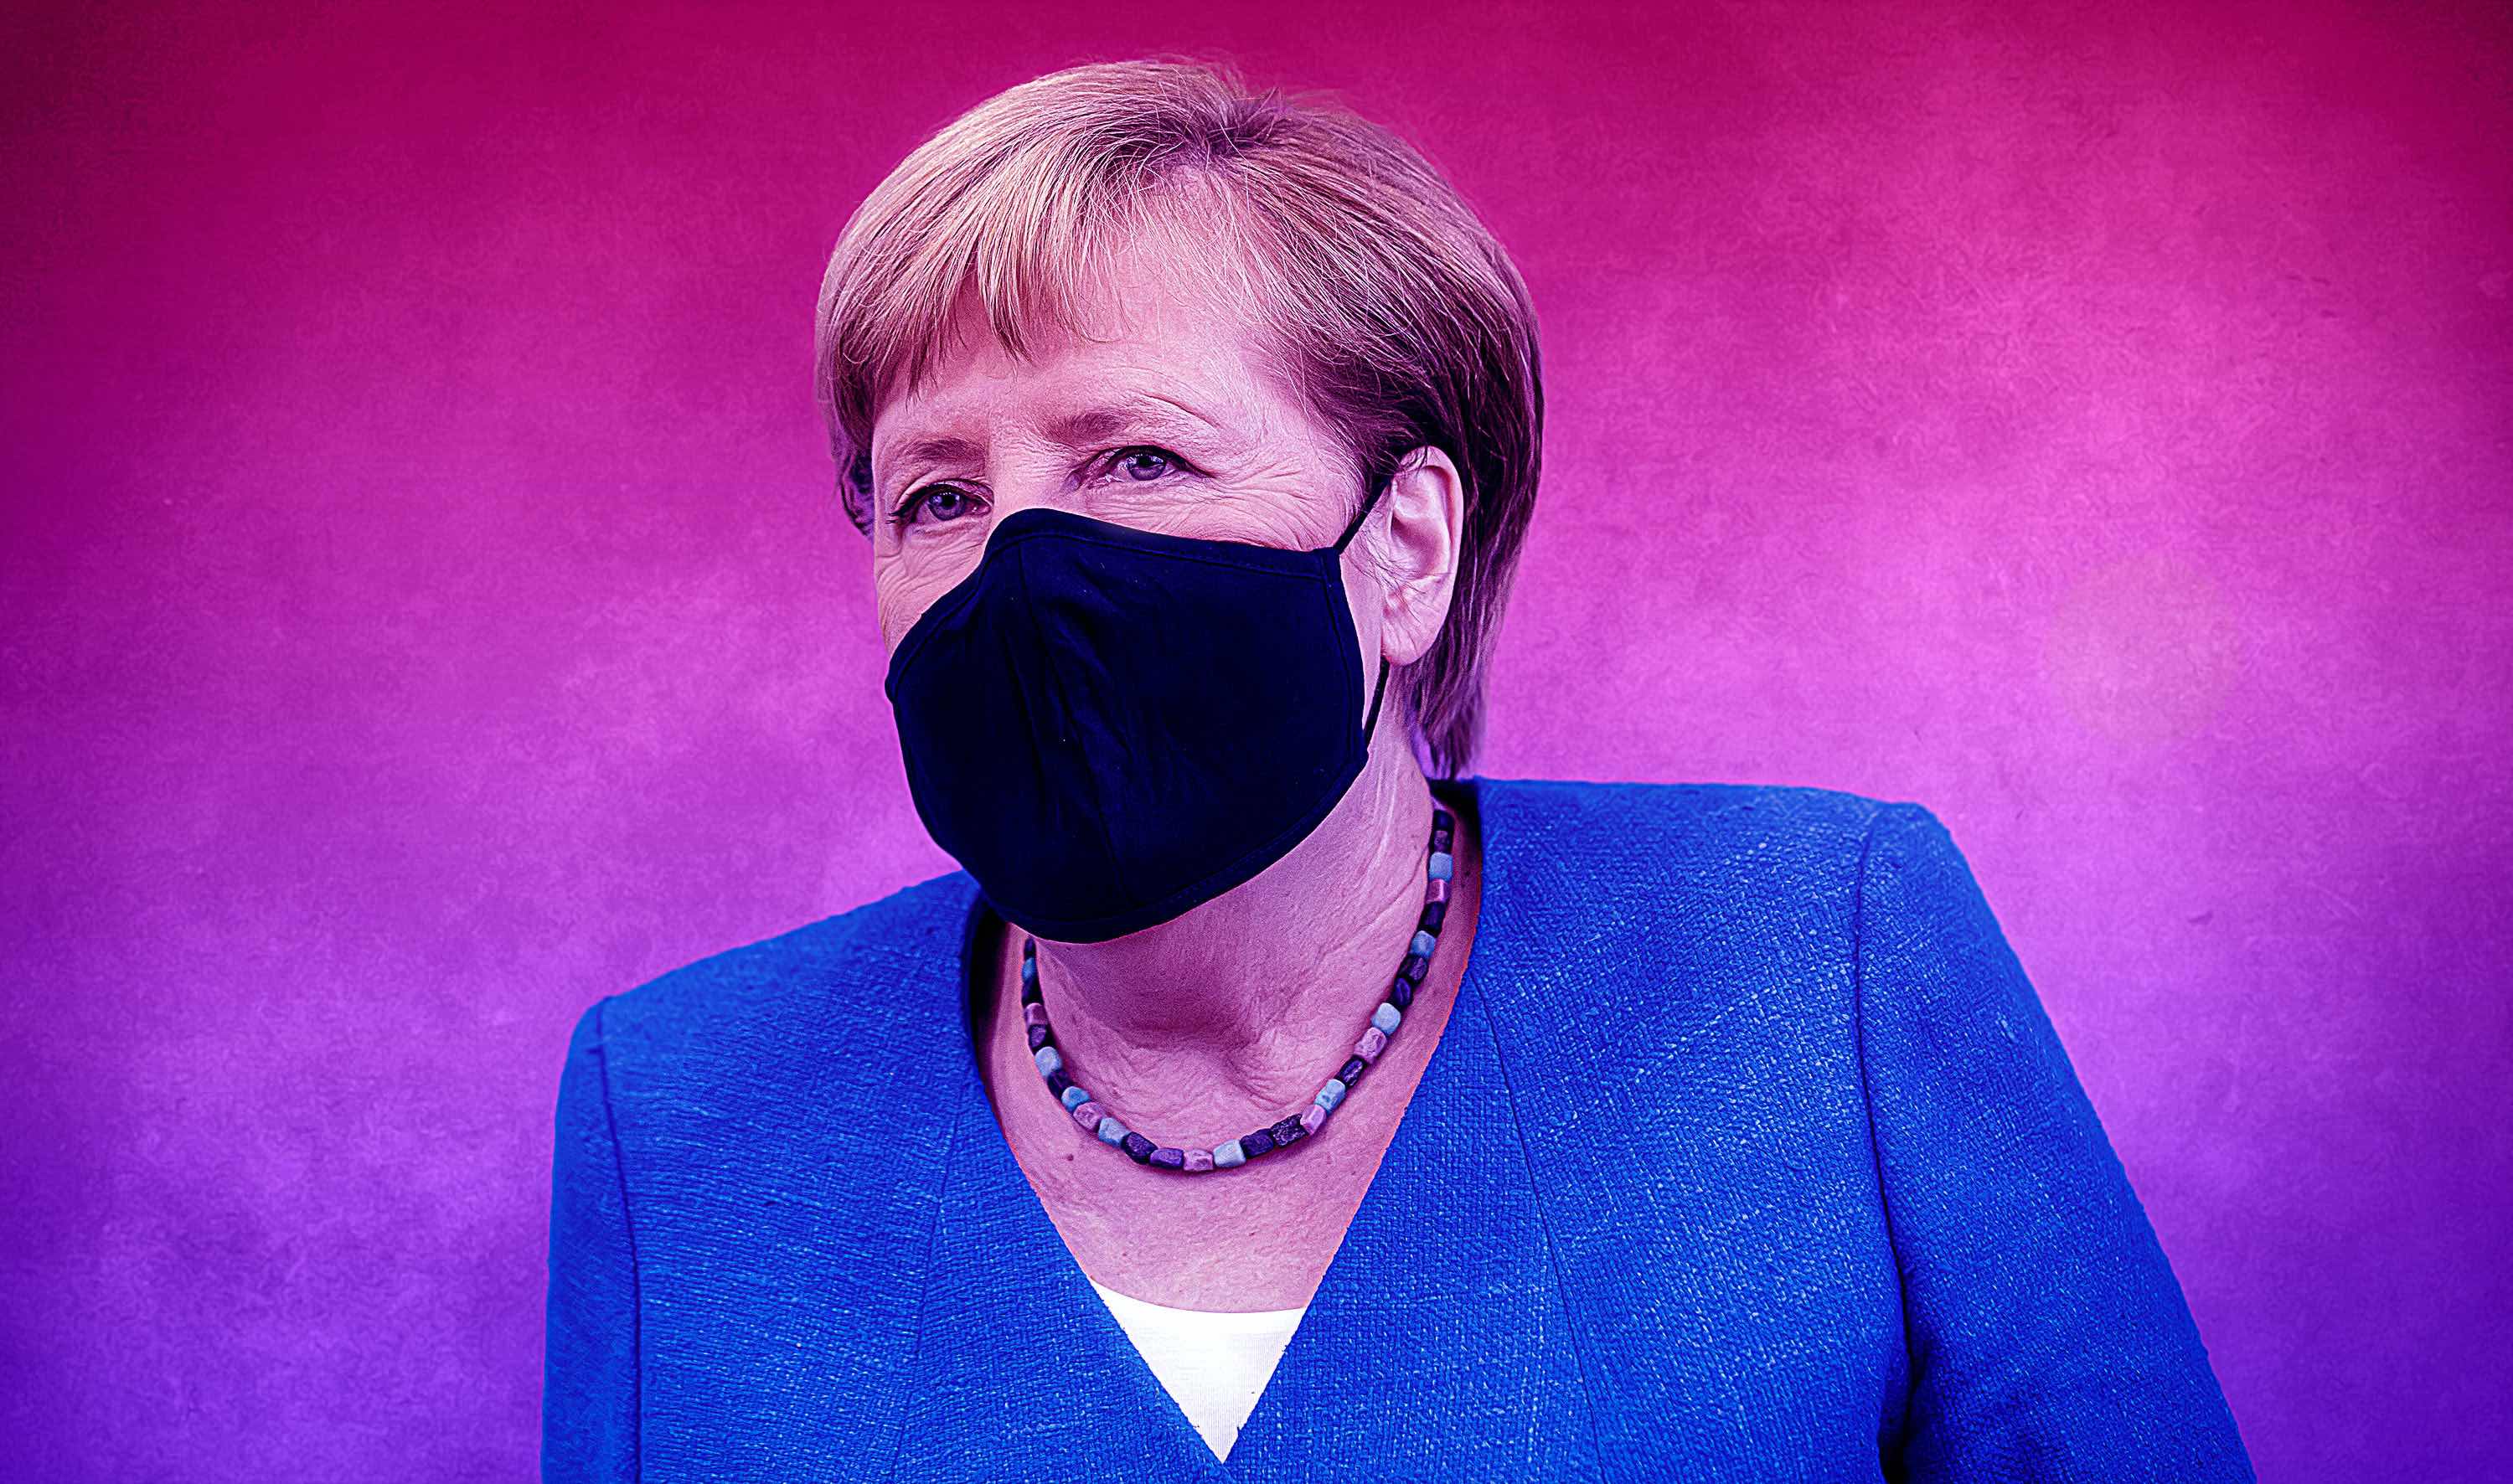 20201126-image-mediapioneer-morning briefing-Merkel Maske